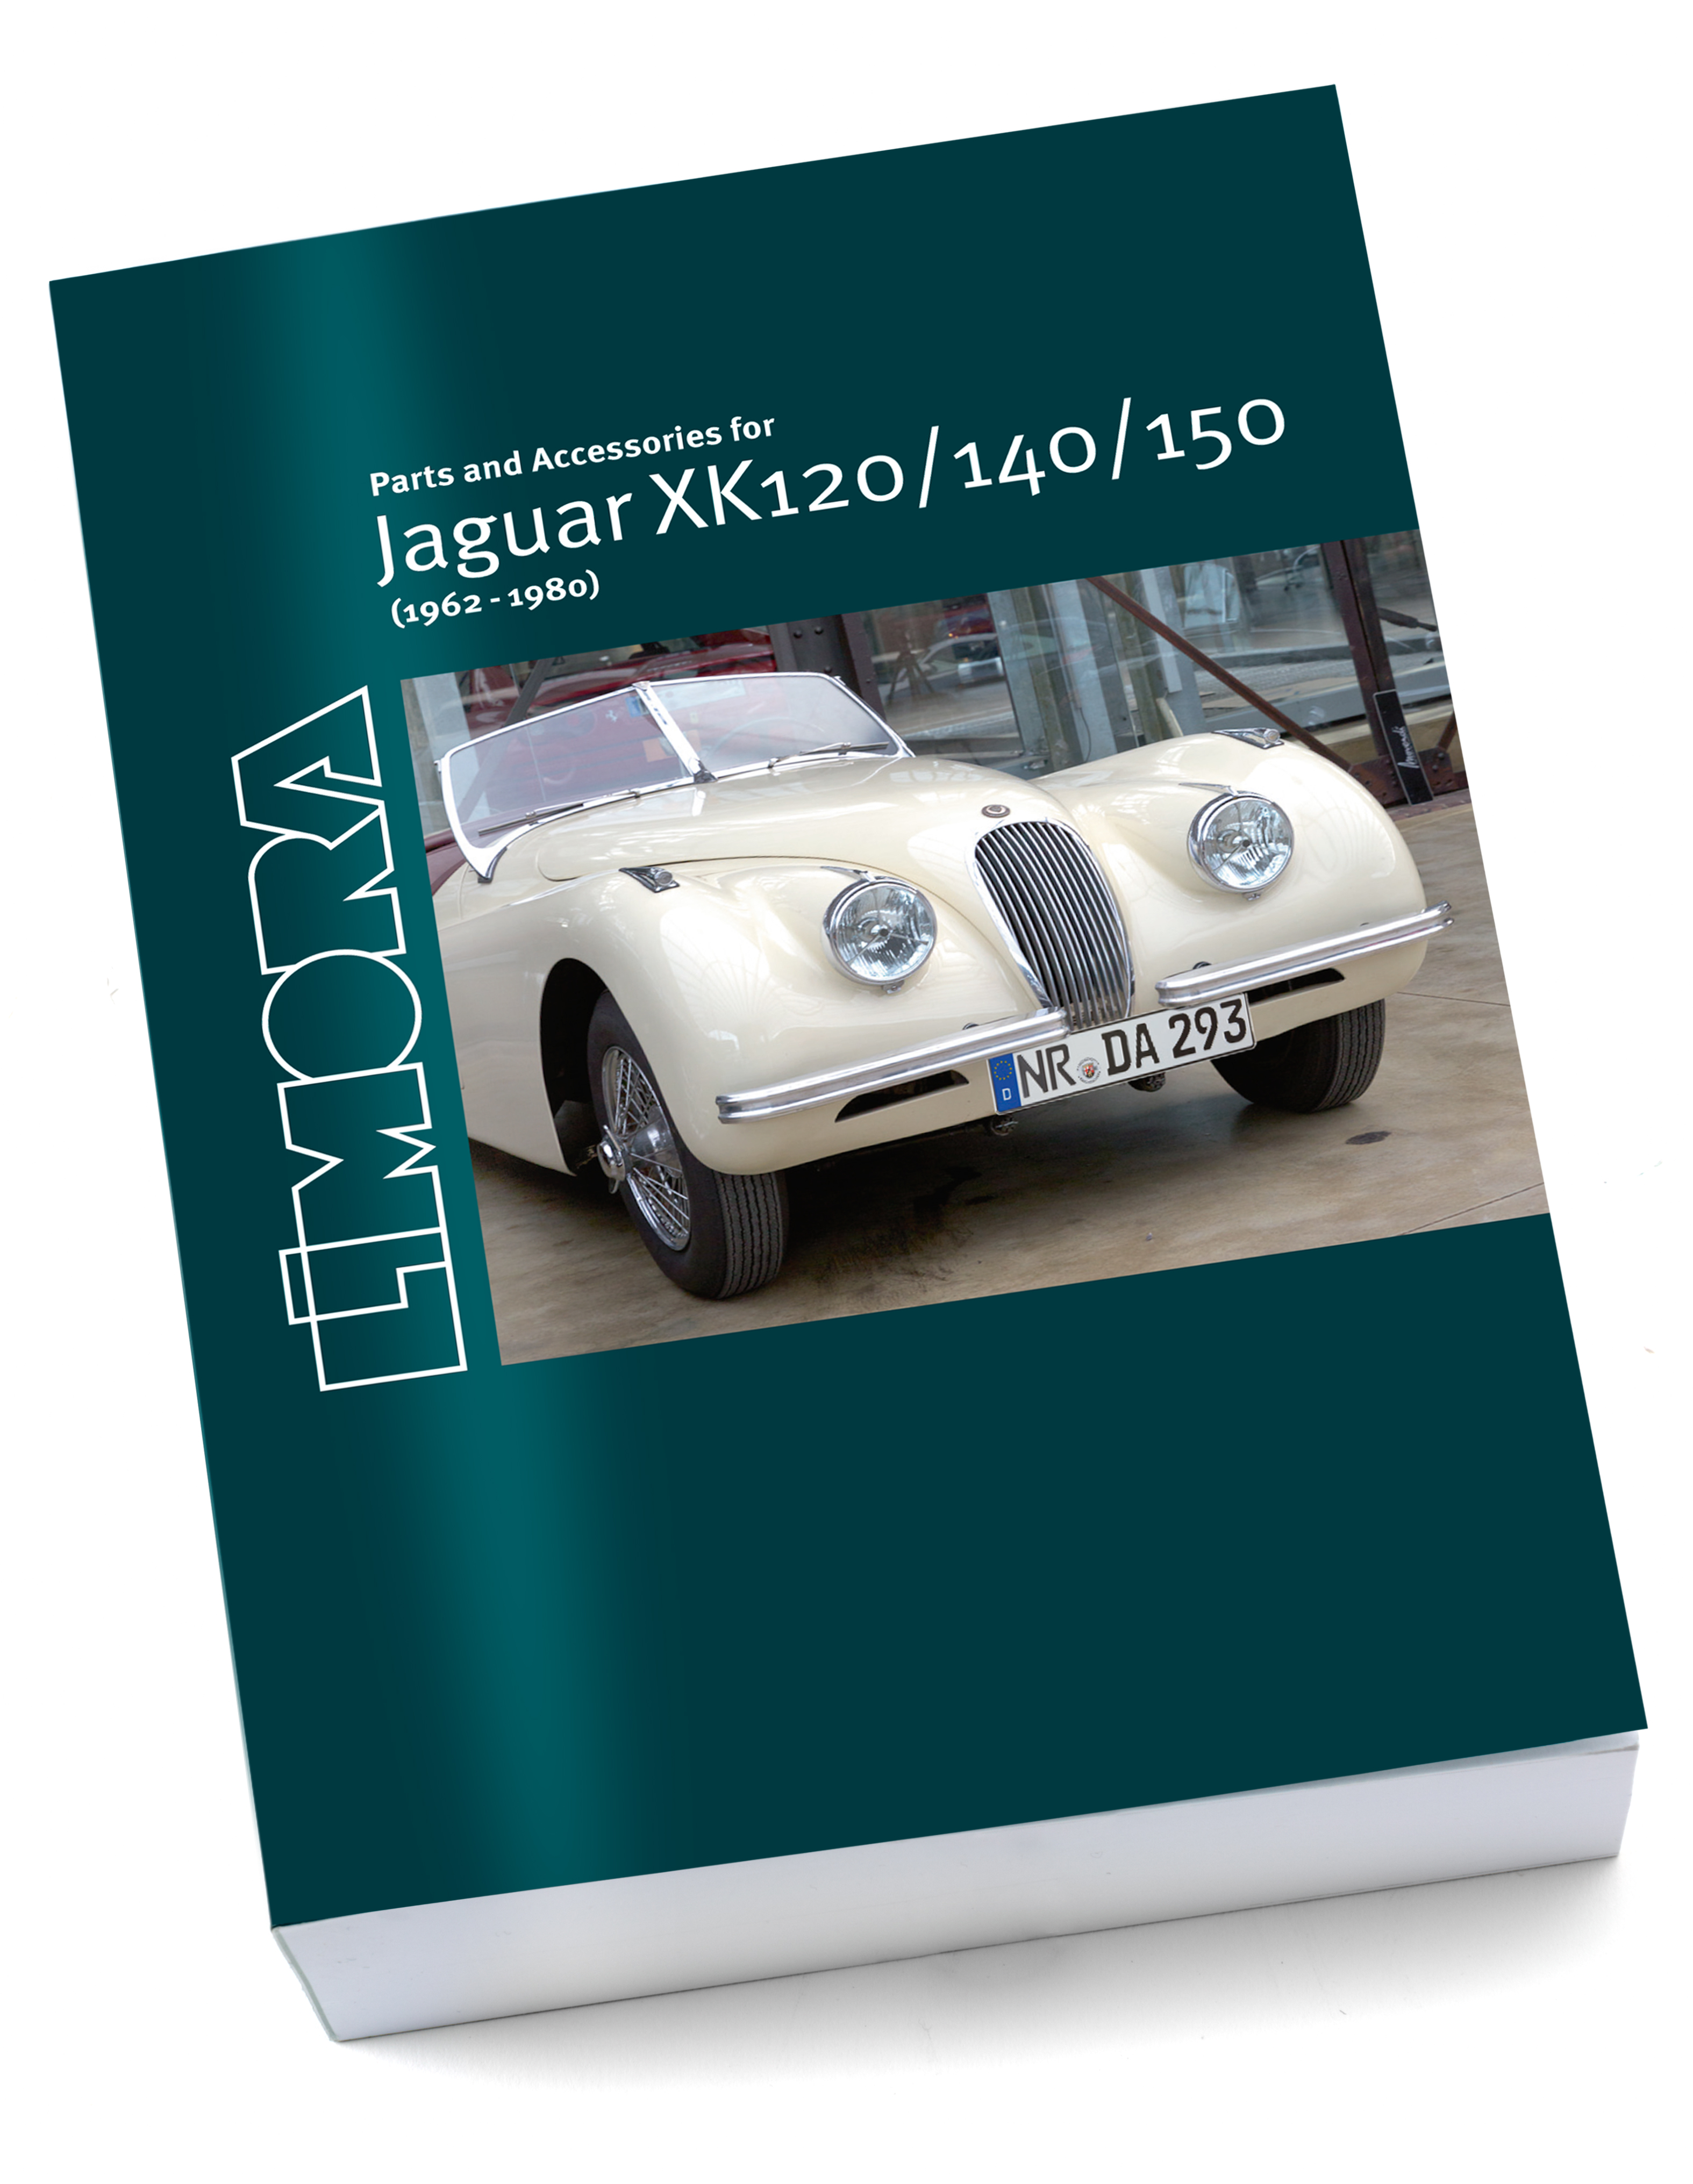 Limora Catalogo ricambi Jaguar XK120, XK140, XK150